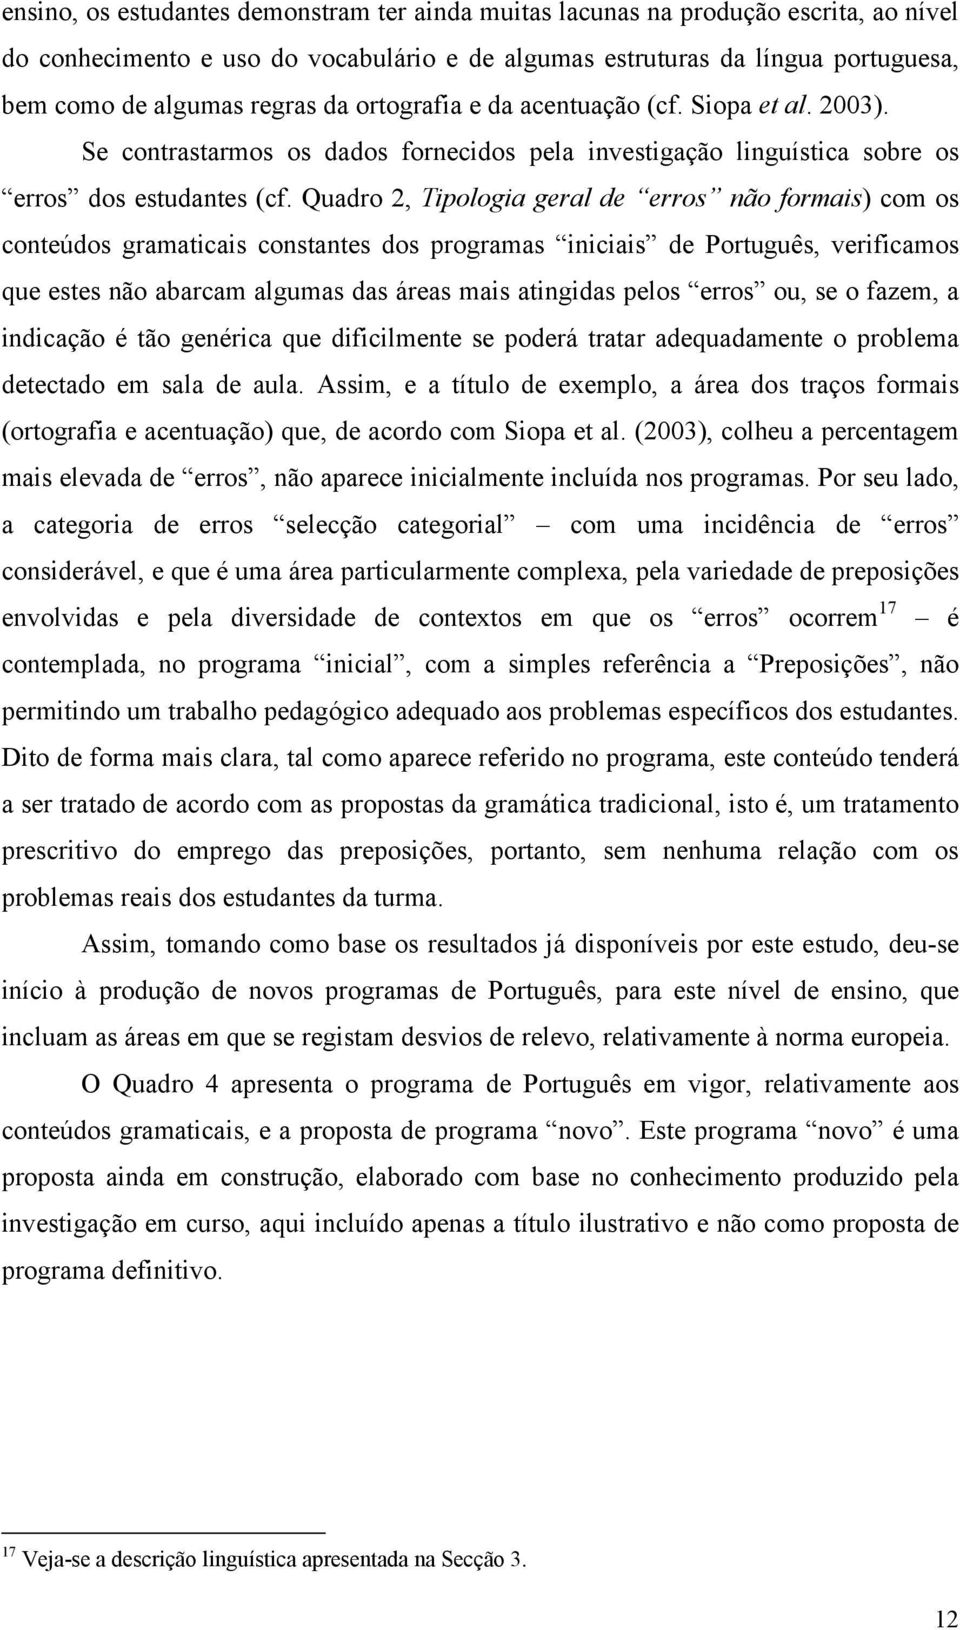 Quadro 2, Tipologia geral de erros não formais) com os conteúdos gramaticais constantes dos programas iniciais de Português, verificamos que estes não abarcam algumas das áreas mais atingidas pelos